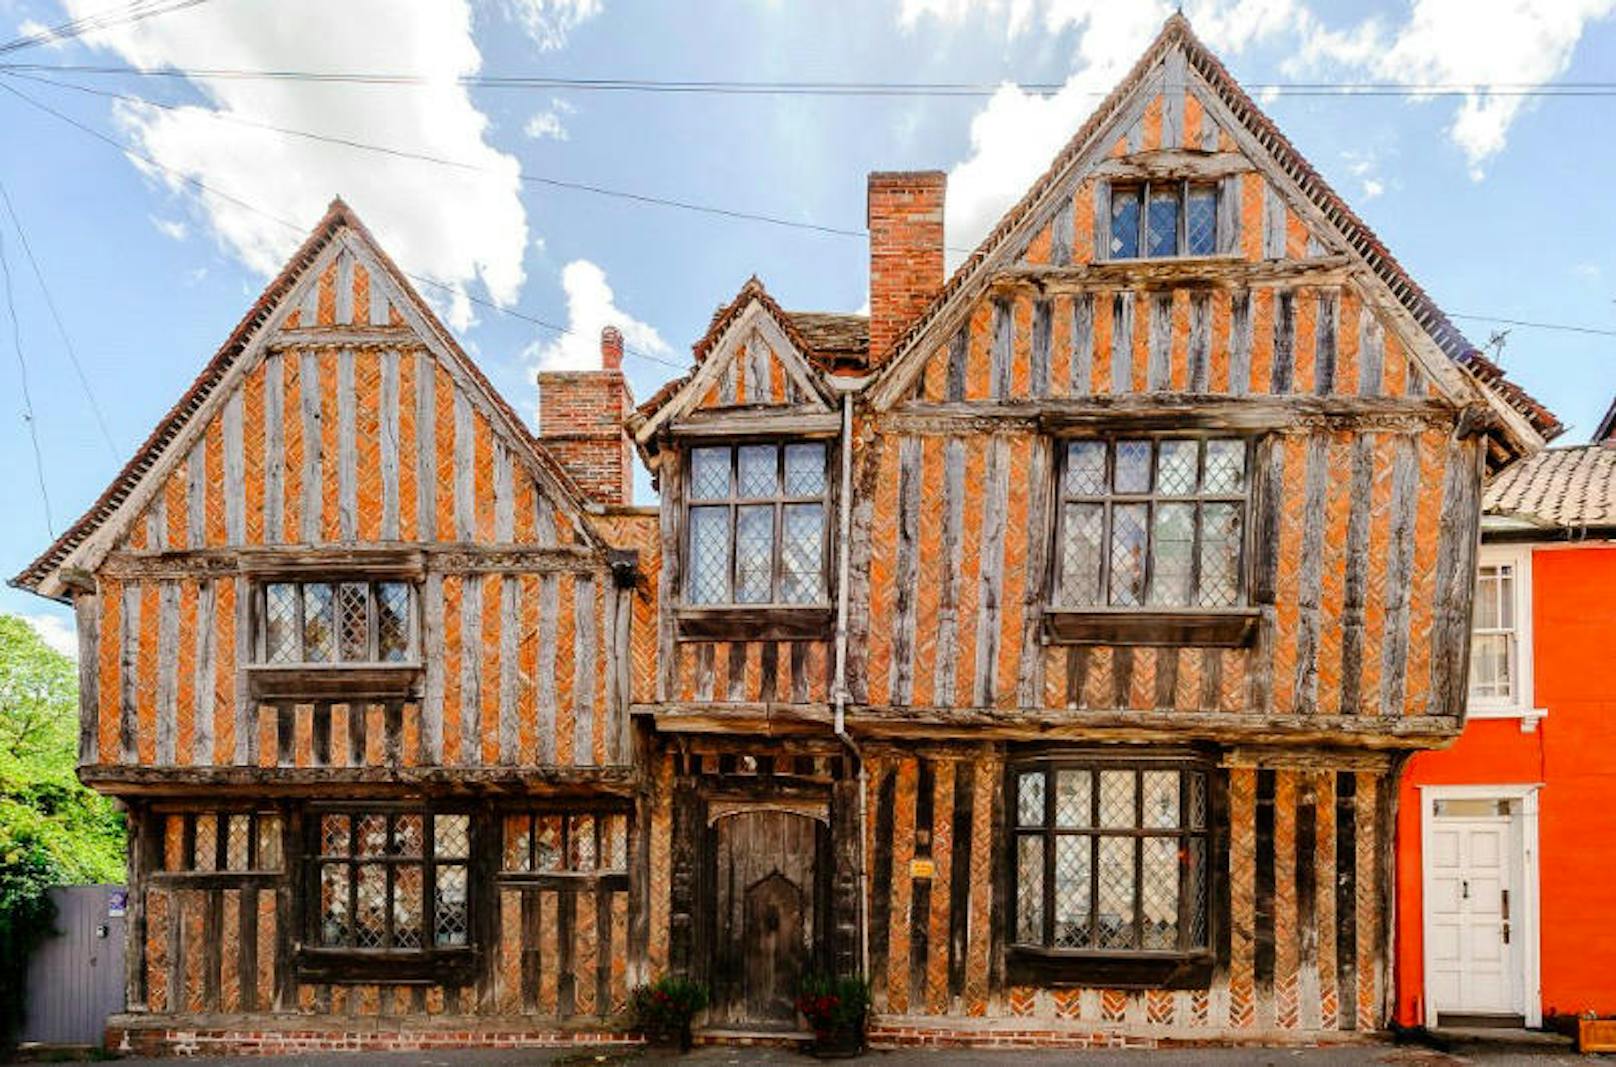 Das ist das De Vere House in Suffolk. Es diente als Vorlage für das Haus von Lily und James, Eltern von Harry Potter in der Buchverfilmung.